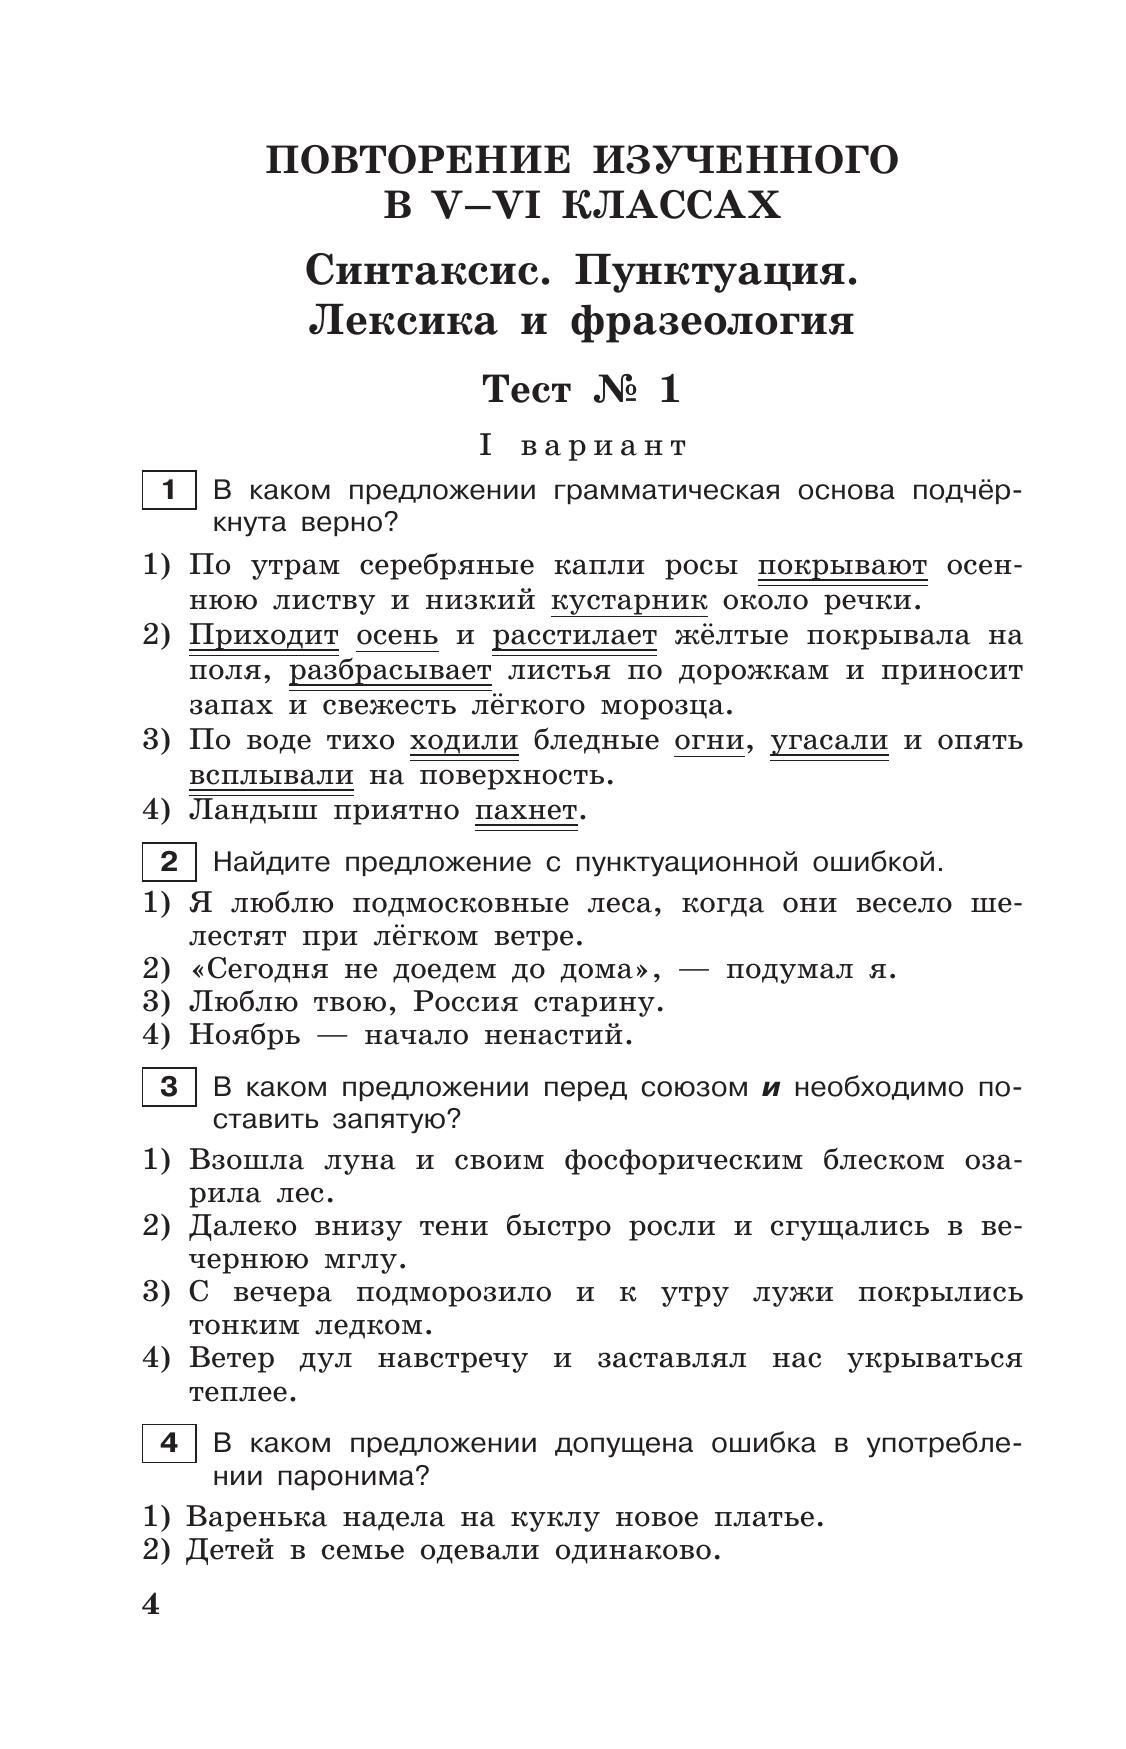 Тестовые задания по русскому языку. 7 класс. 7